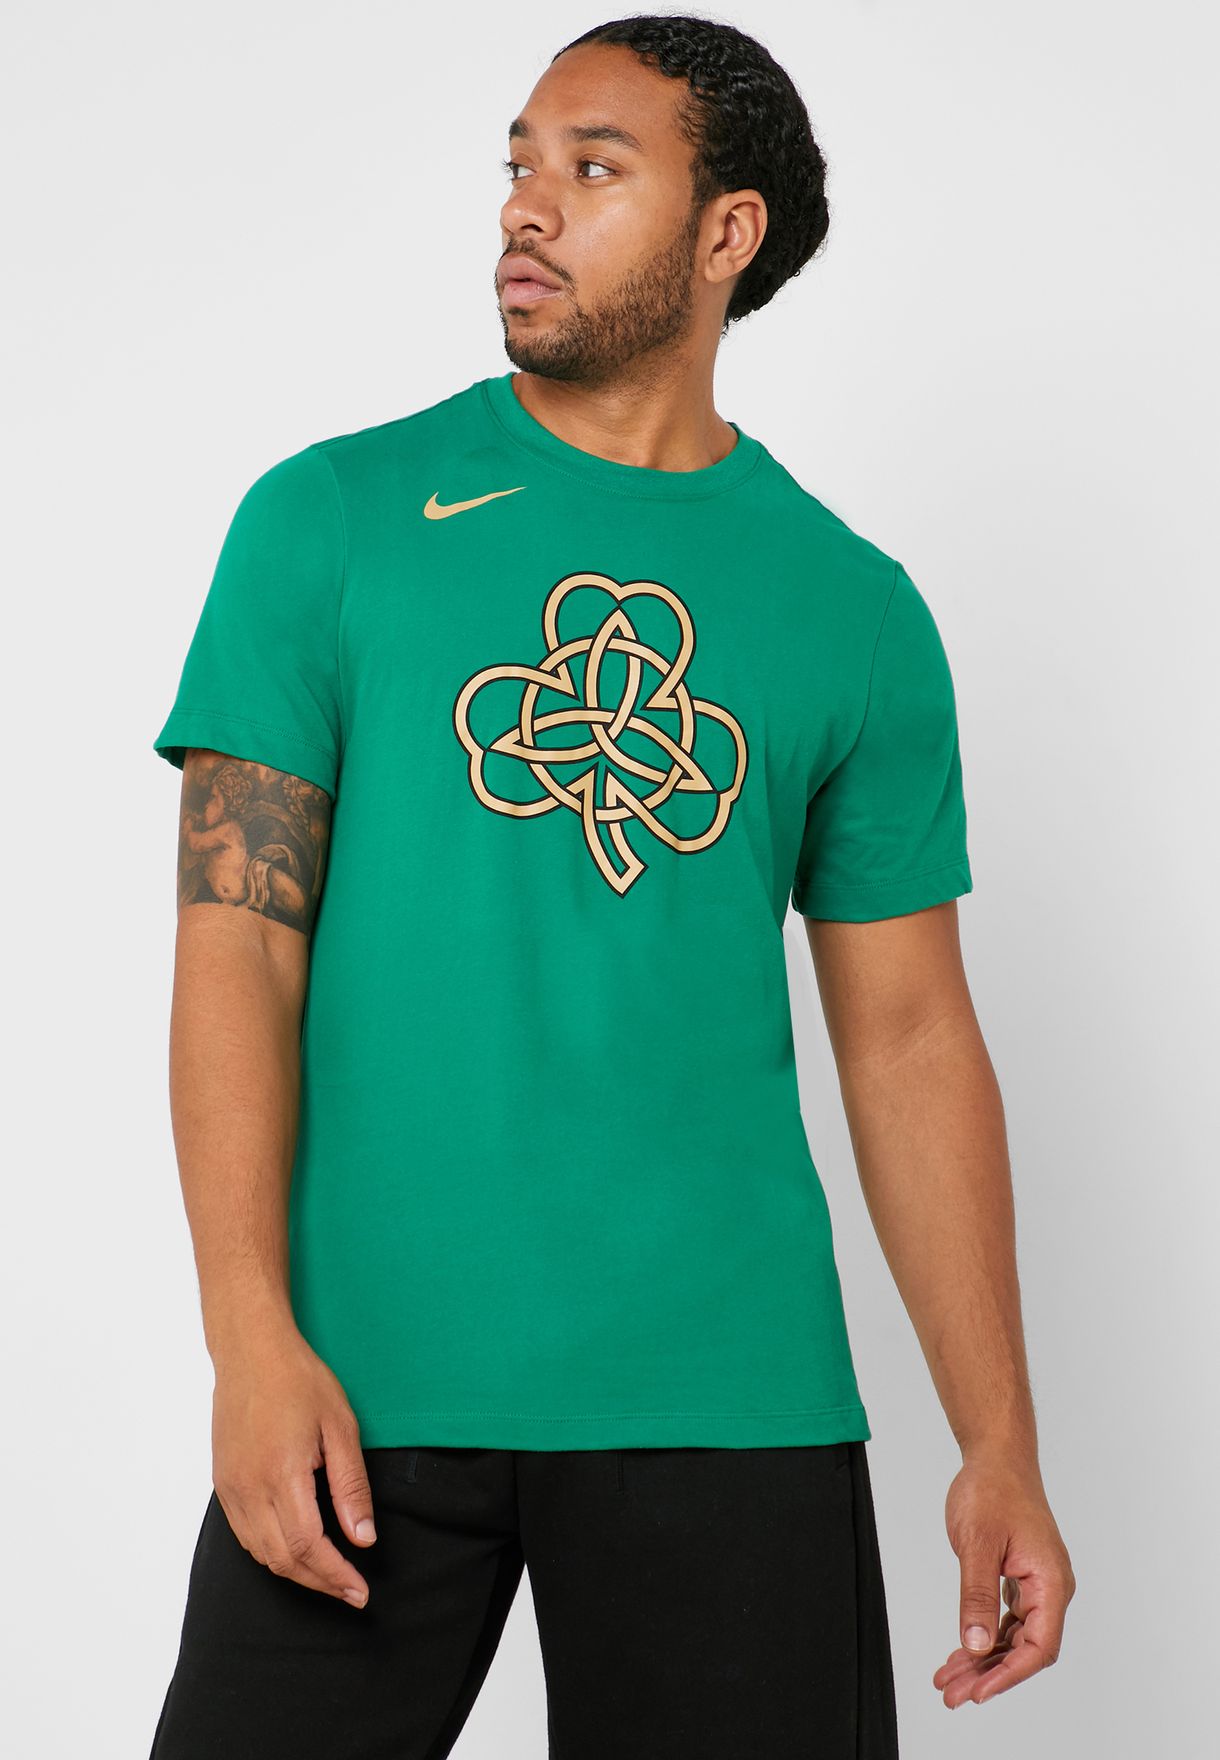 nike celtics t shirt